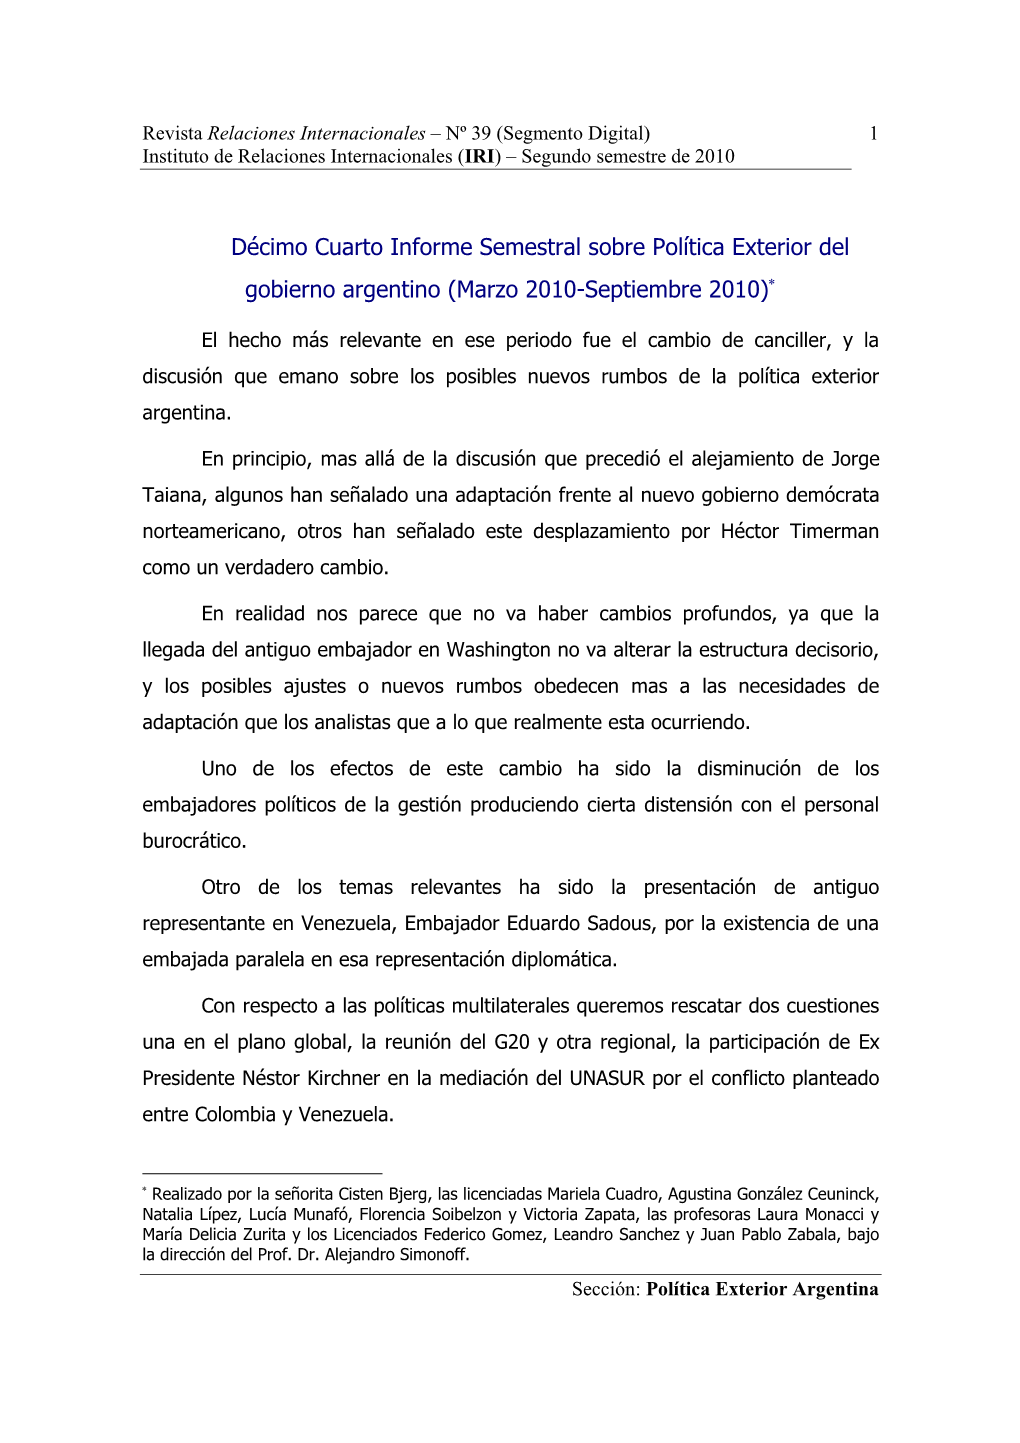 Segundo Semestre De 2010 Sección: Política Exterior Argentina 1